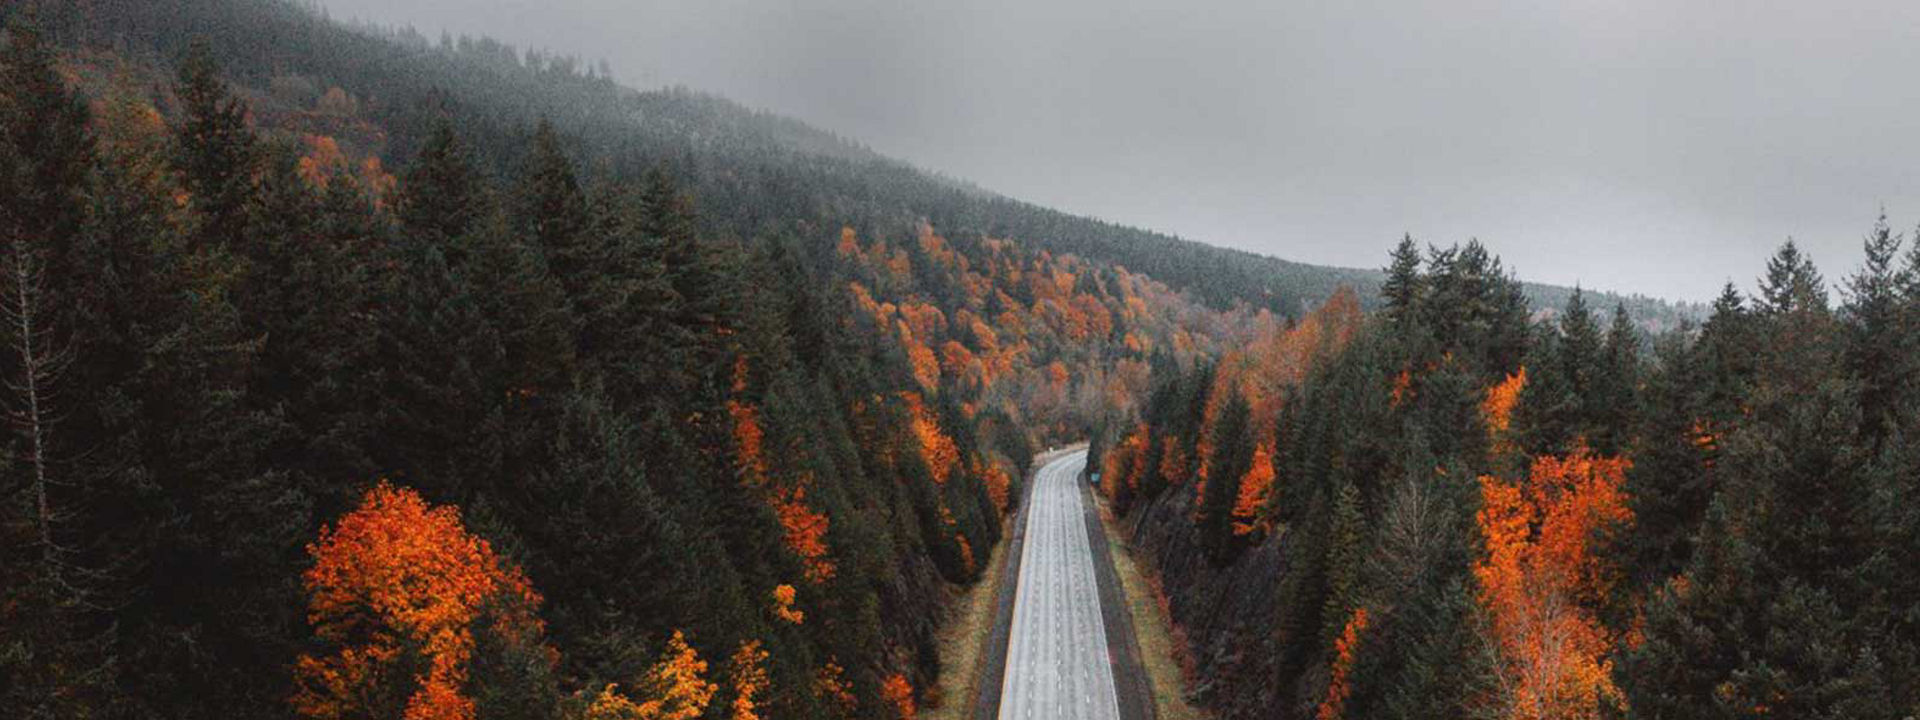 Ovo je fotografija prazne autoceste koja se proteže kroz šumu tijekom jeseni kako bi se pokazalo da su Weather Control gume prikladne za sva godišnja doba